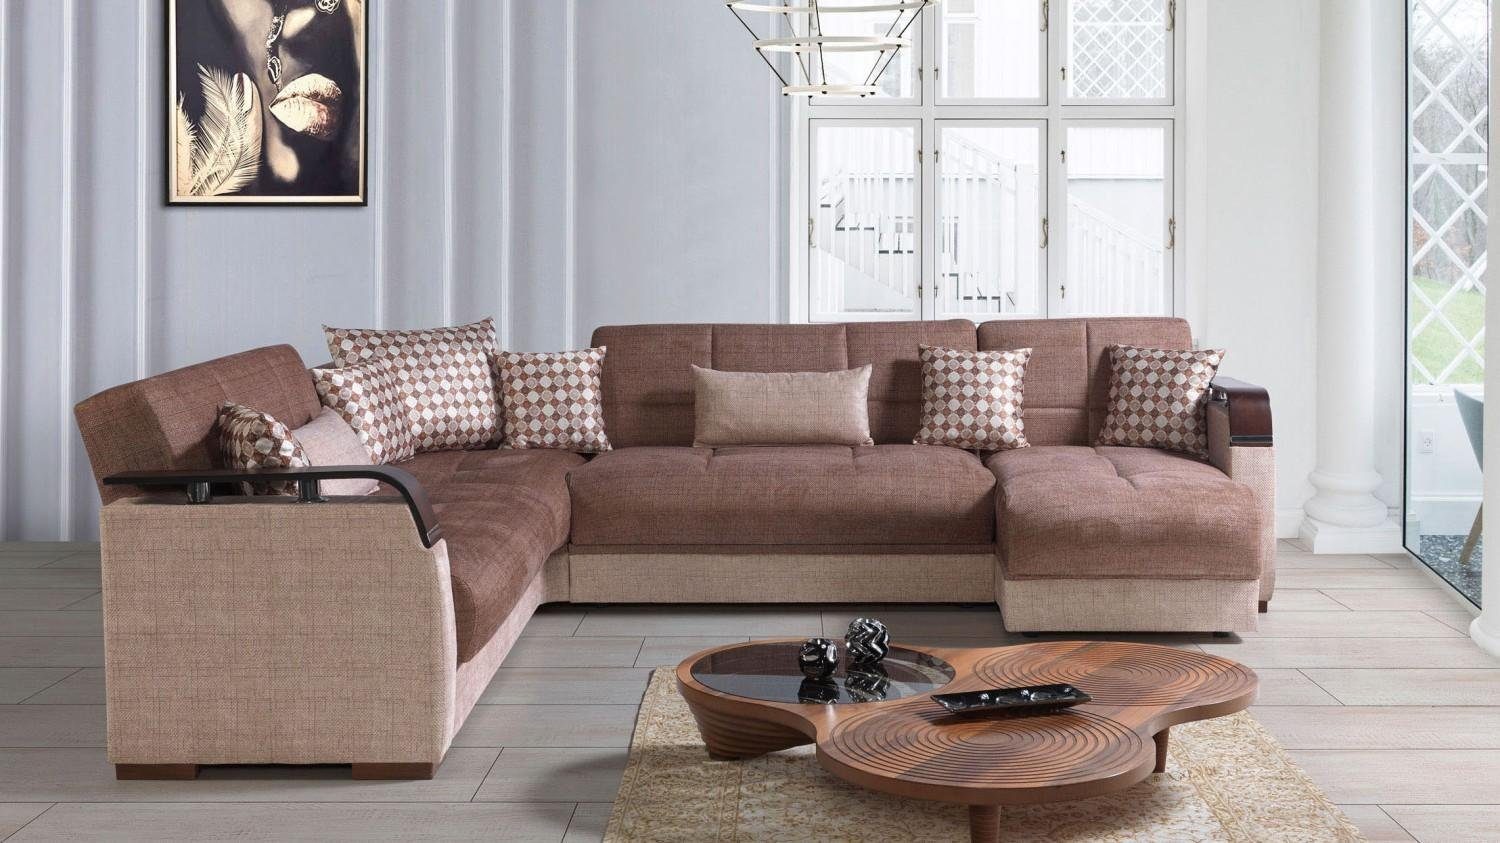 JVmoebel Ecksofa Ecksofa Wohnlandschaft L-Form Luxus, Made Sofa Wohnzimmer Ecksofas Europe Braun In